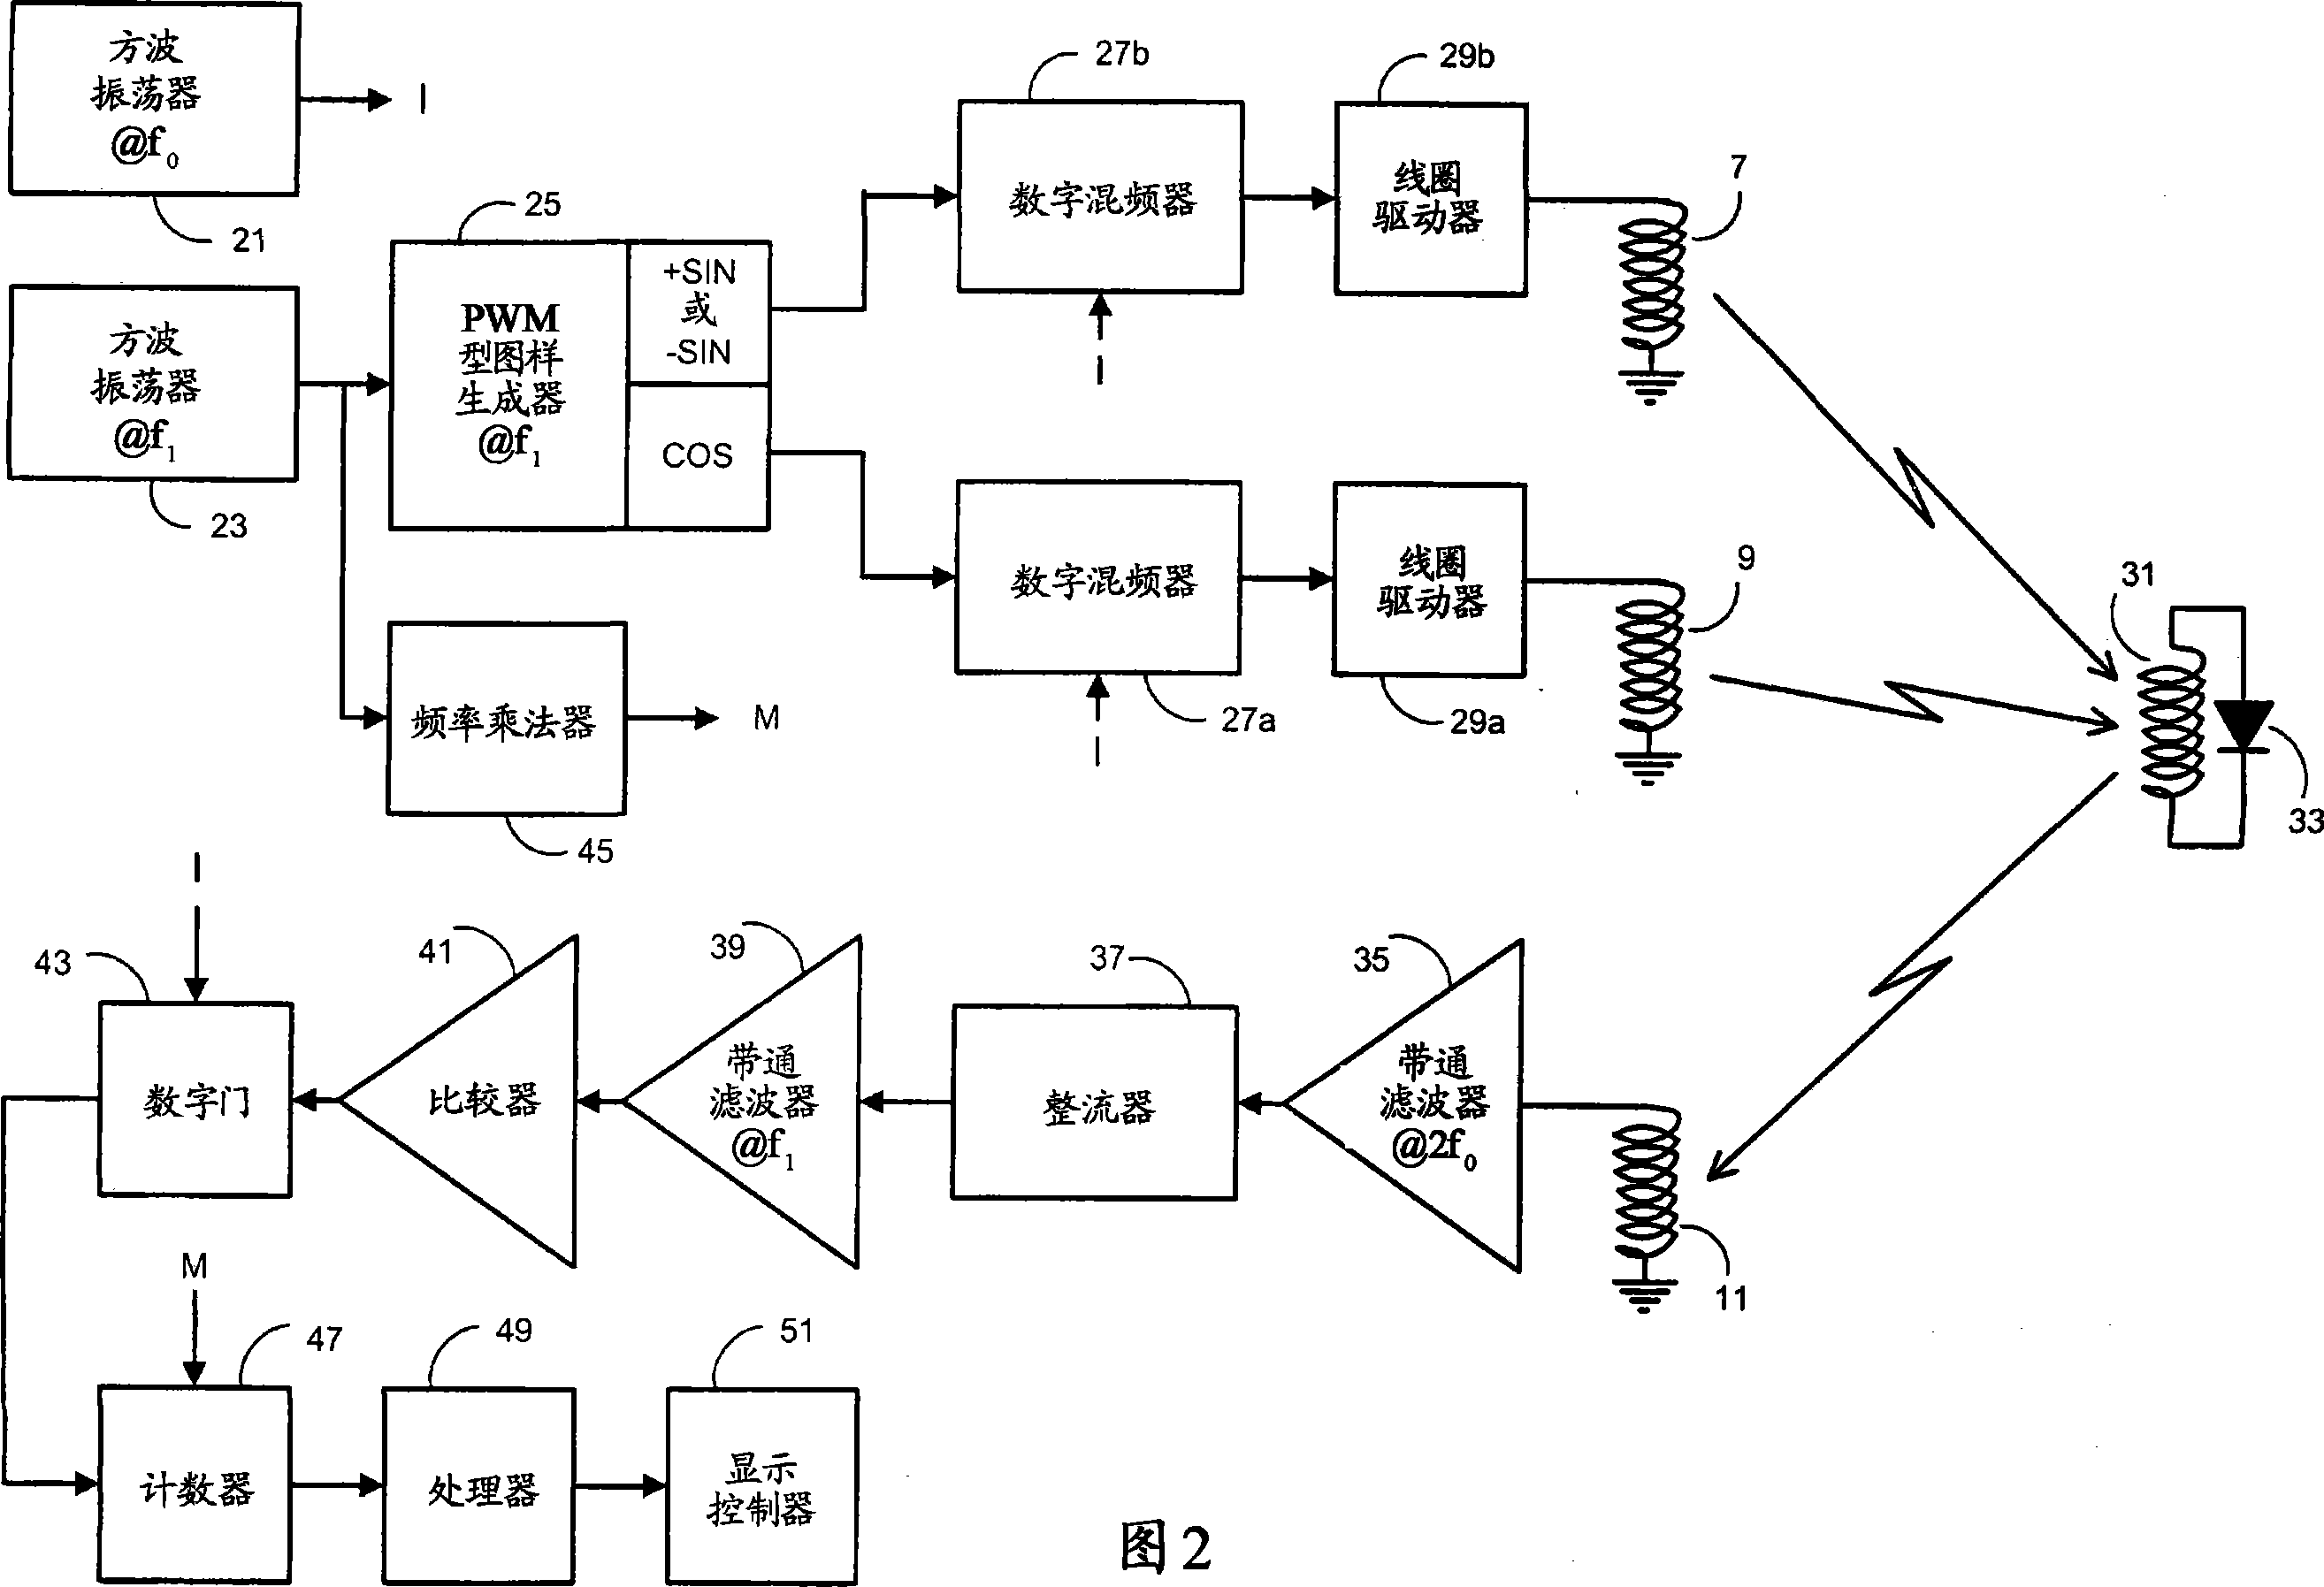 Sensing apparatus and method